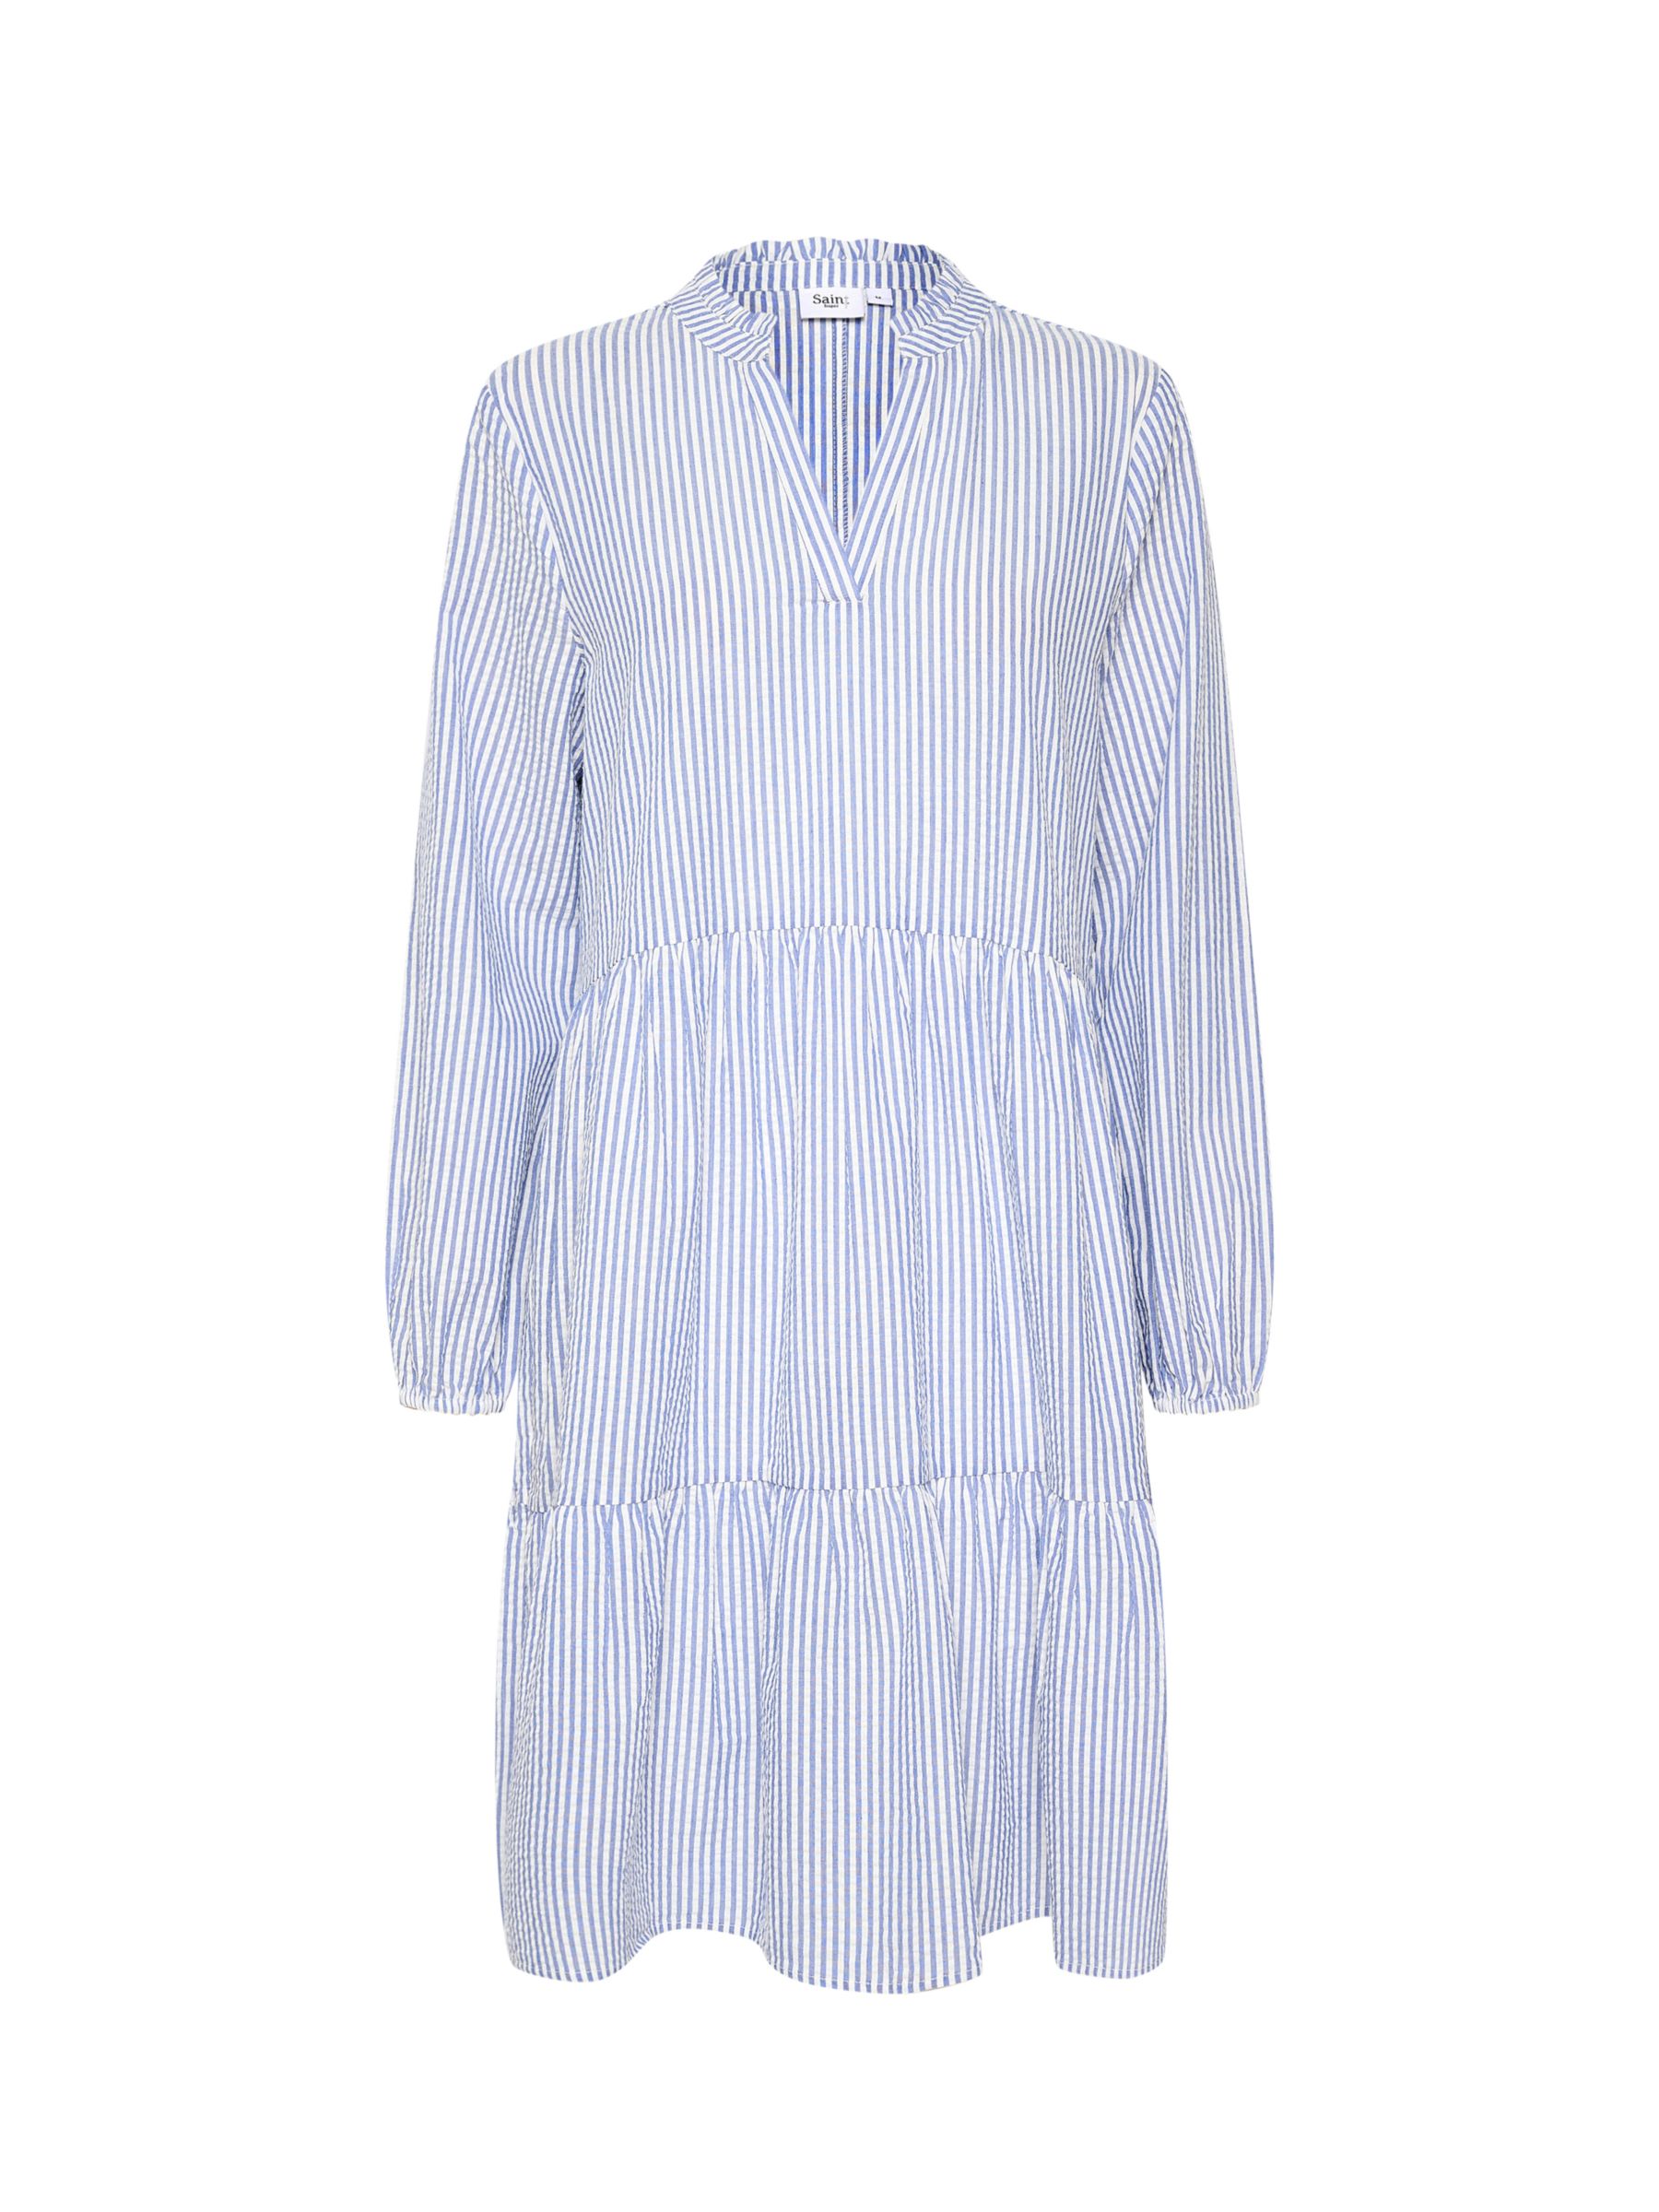 Saint Tropez Linette Dress, Blue/White at John Lewis & Partners